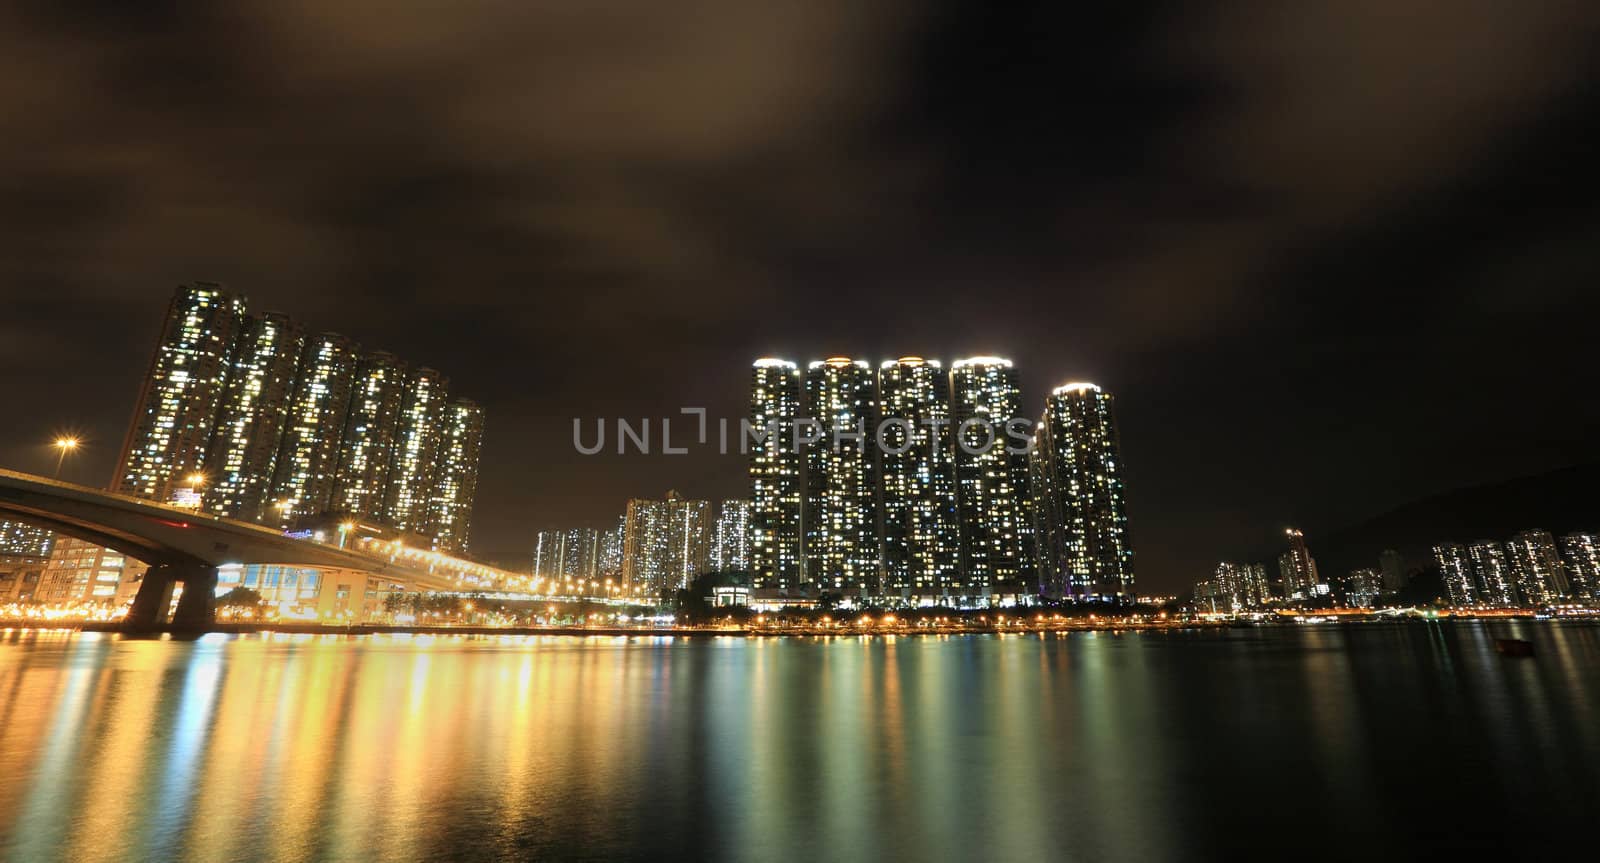 Hong Kong at night by leungchopan